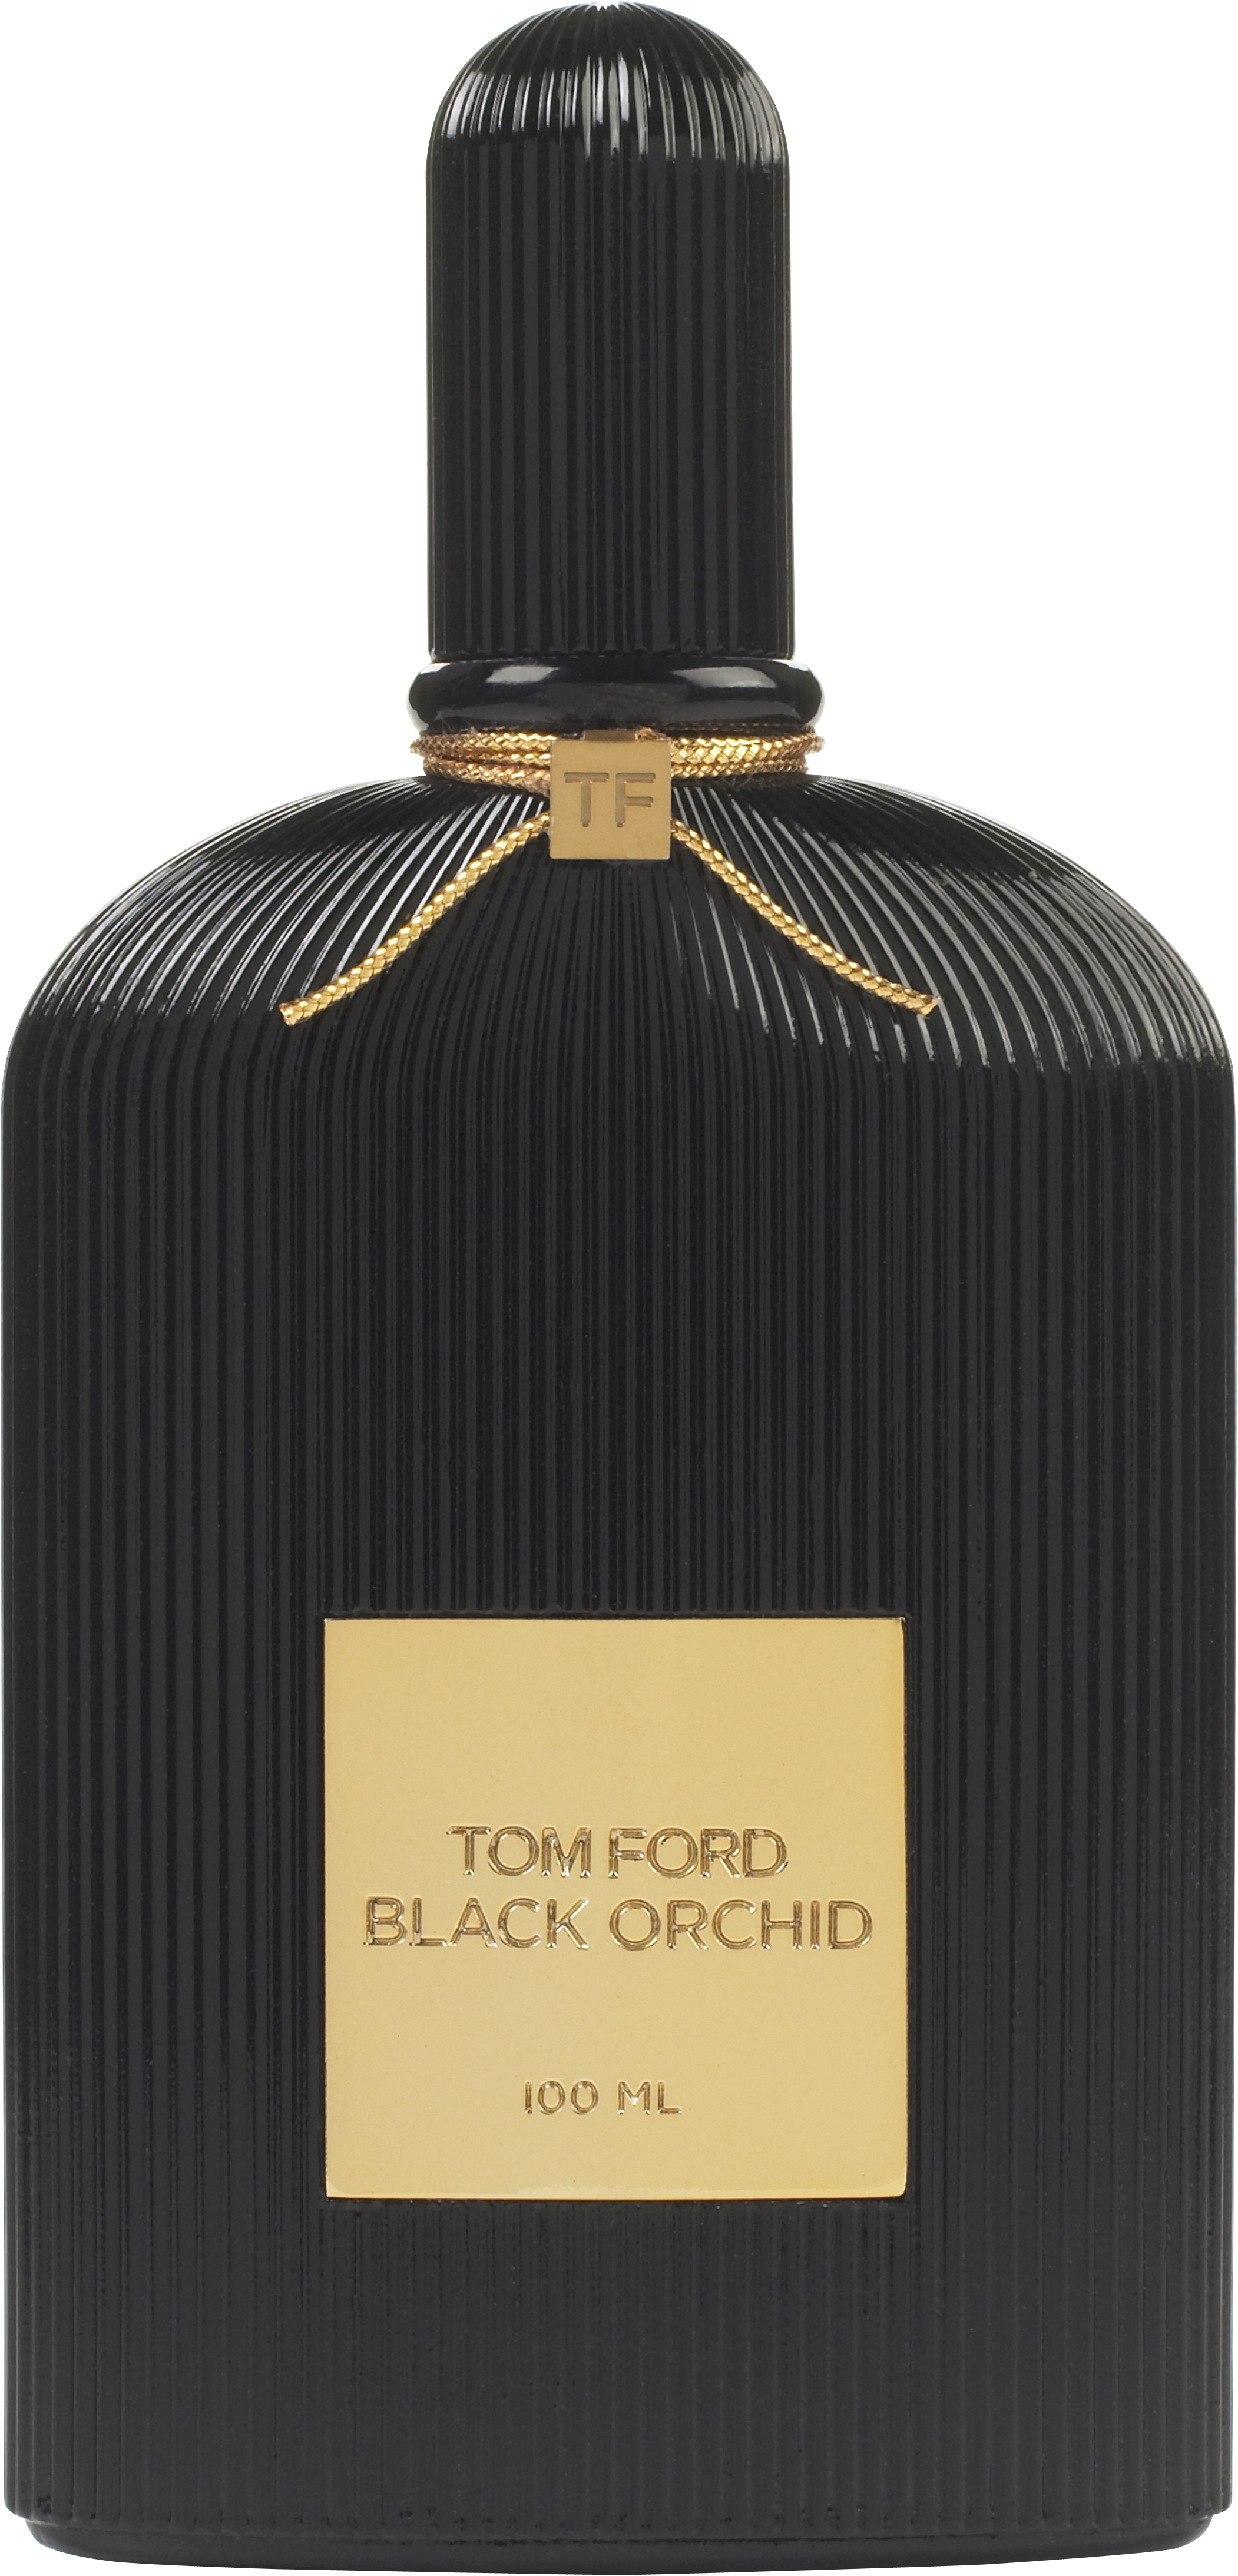 Tom Ford WOMEN'S SIGNATURE FRAGRANCES Black Orchid Eau de Parfum Nat. Spray 